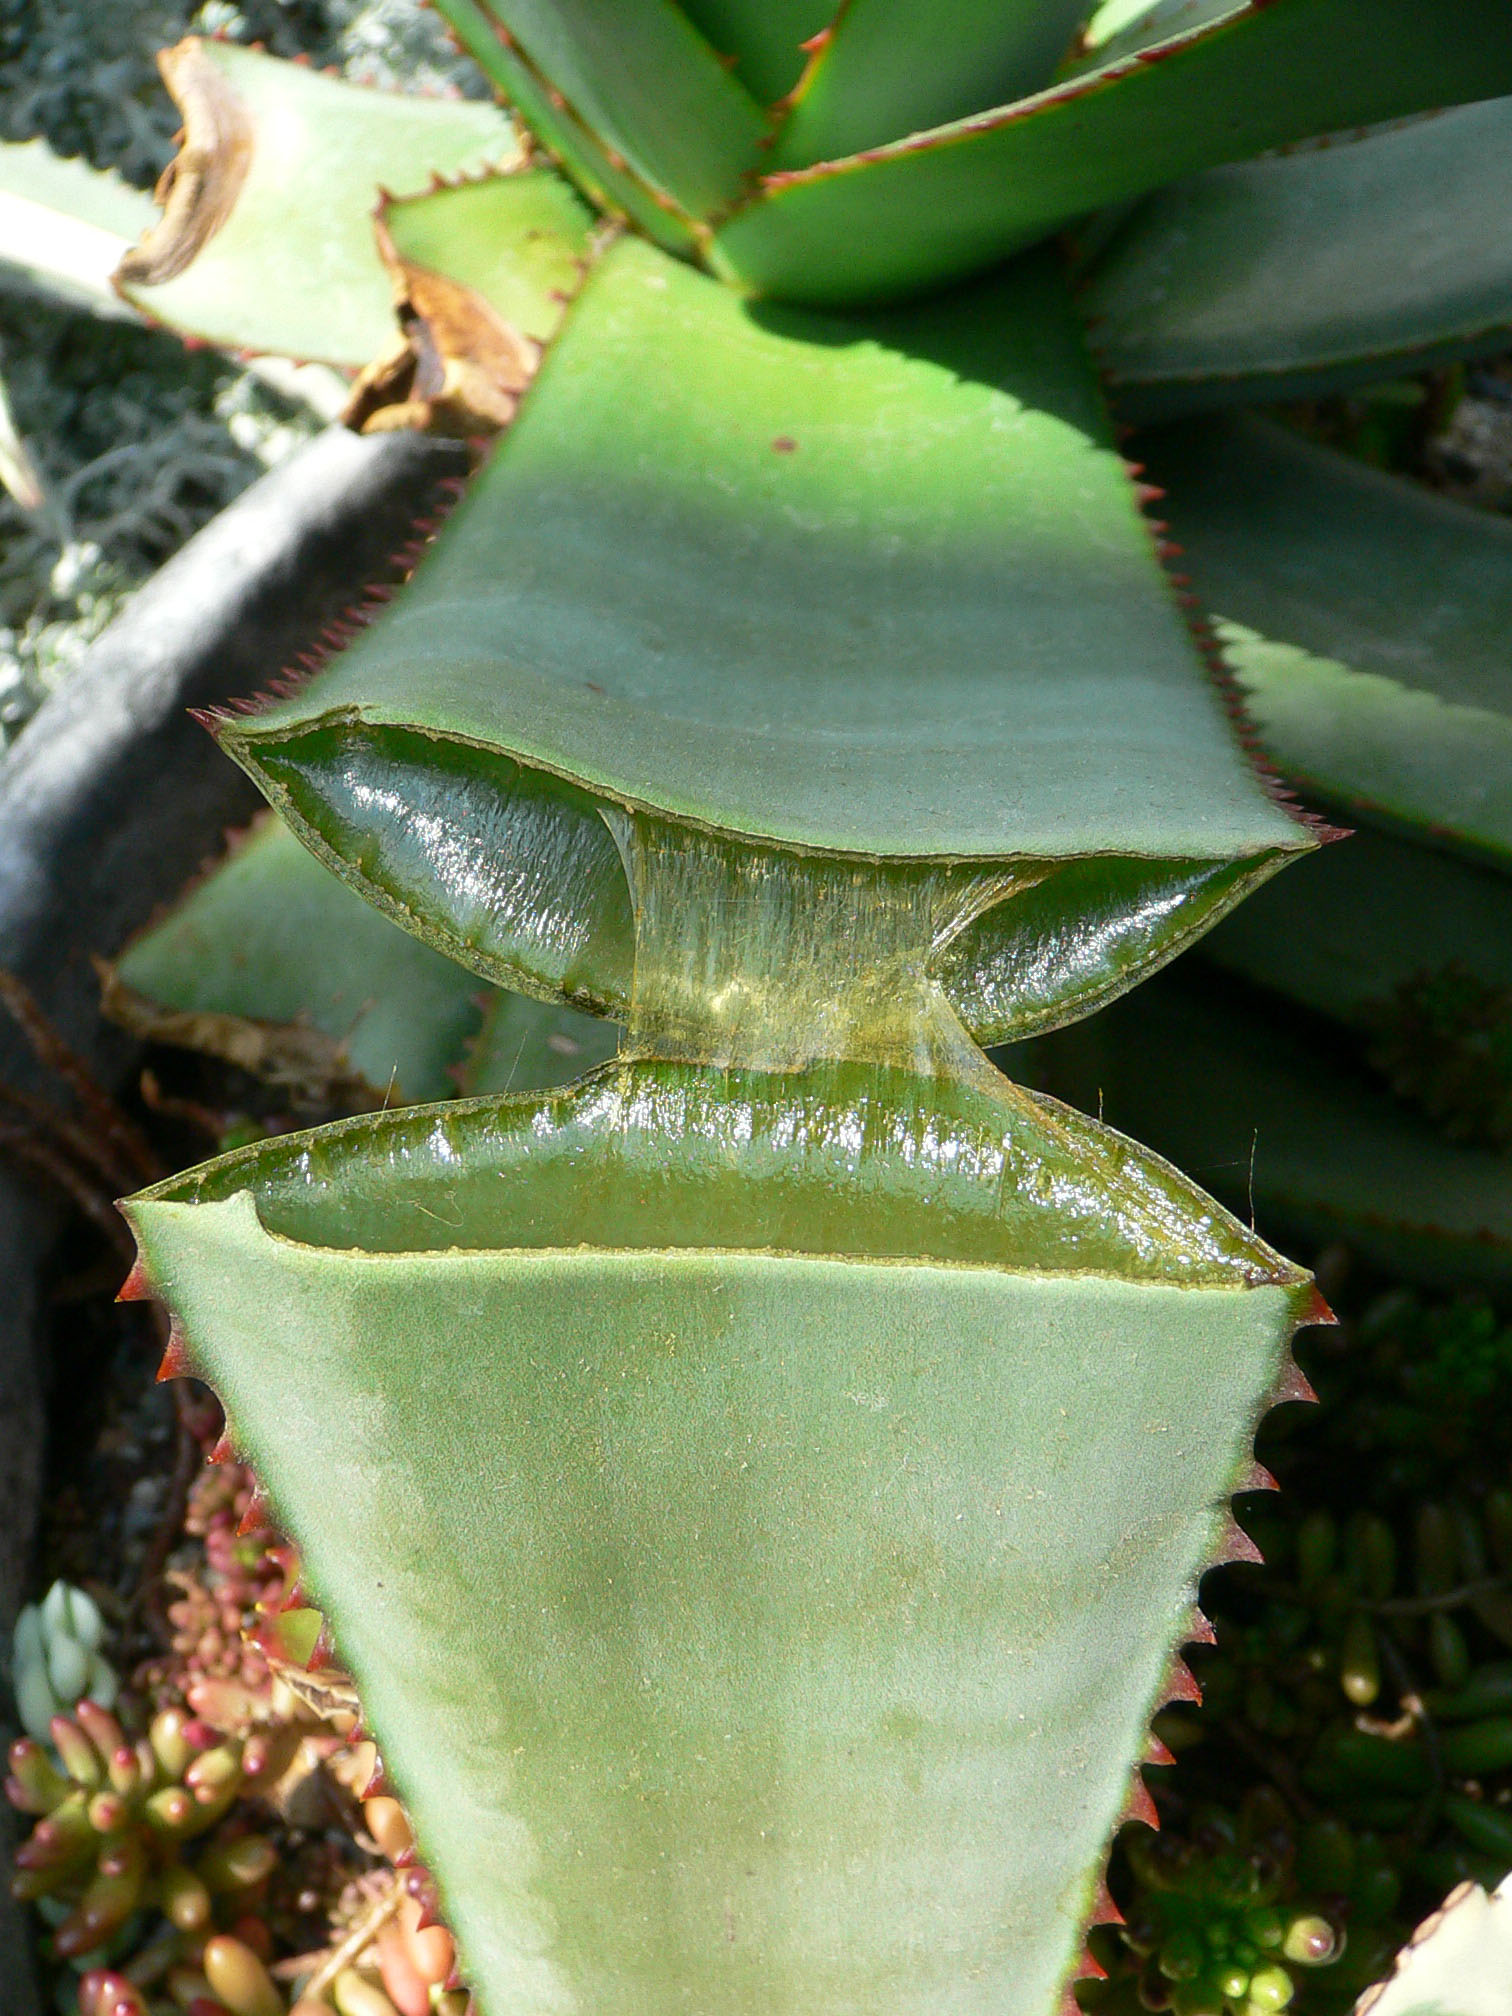 Succulent plant - Wikipedia